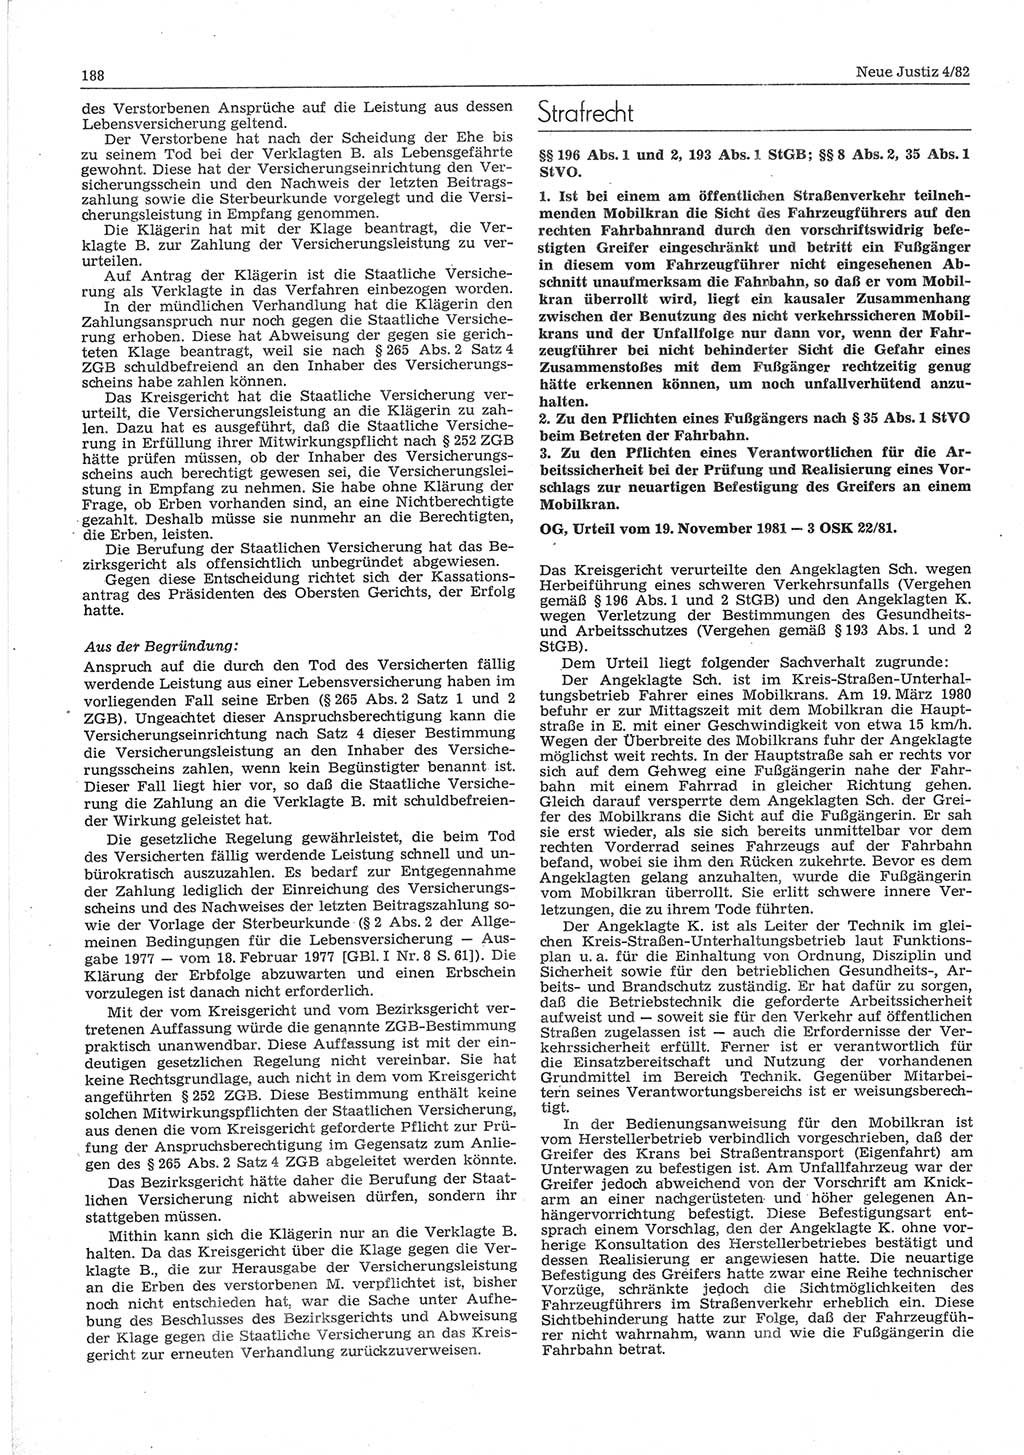 Neue Justiz (NJ), Zeitschrift für sozialistisches Recht und Gesetzlichkeit [Deutsche Demokratische Republik (DDR)], 36. Jahrgang 1982, Seite 188 (NJ DDR 1982, S. 188)